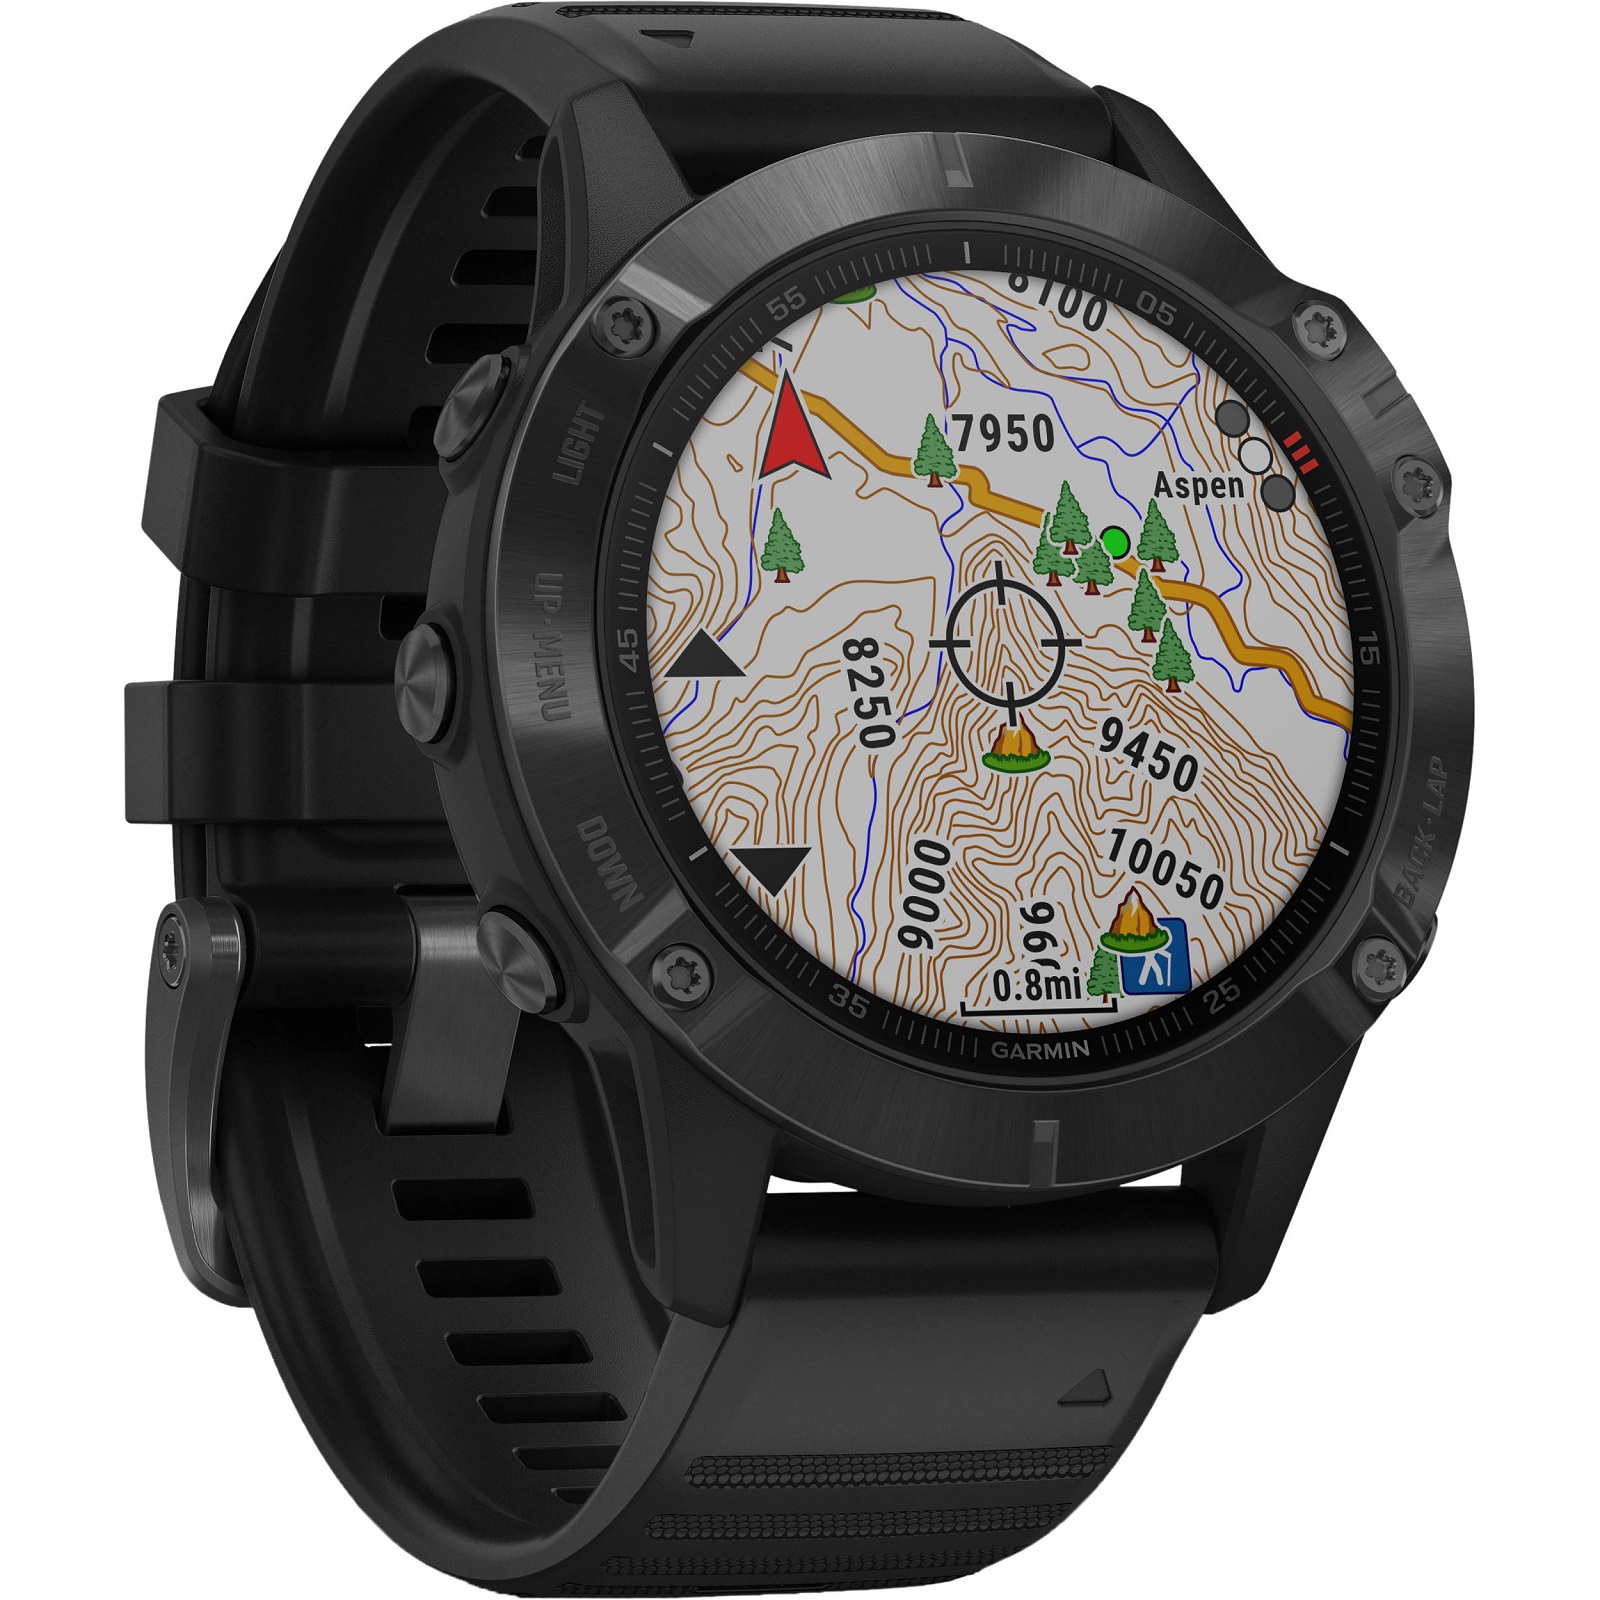 GPS in clock